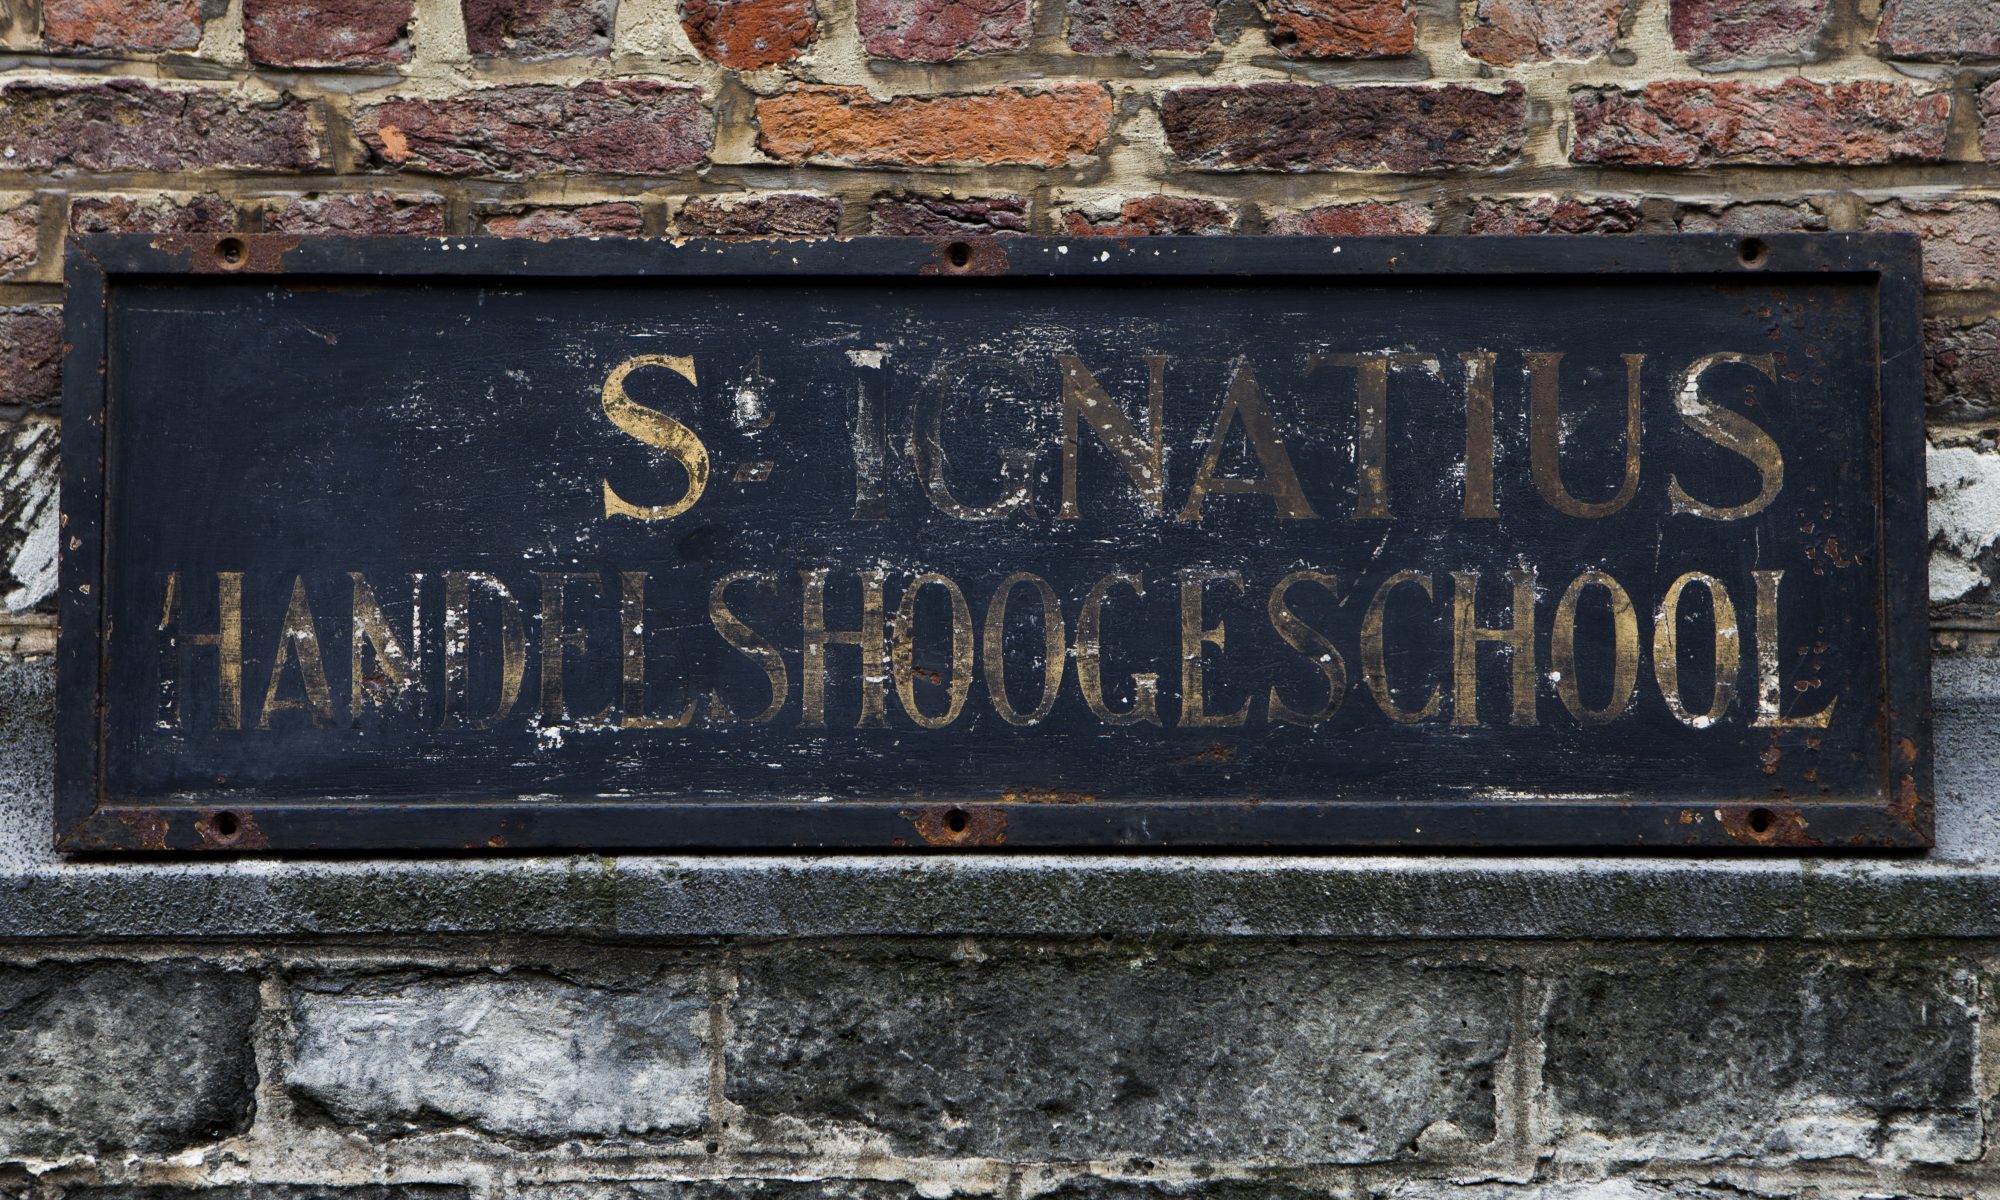 Sint-Ignatius Handelshogeschool